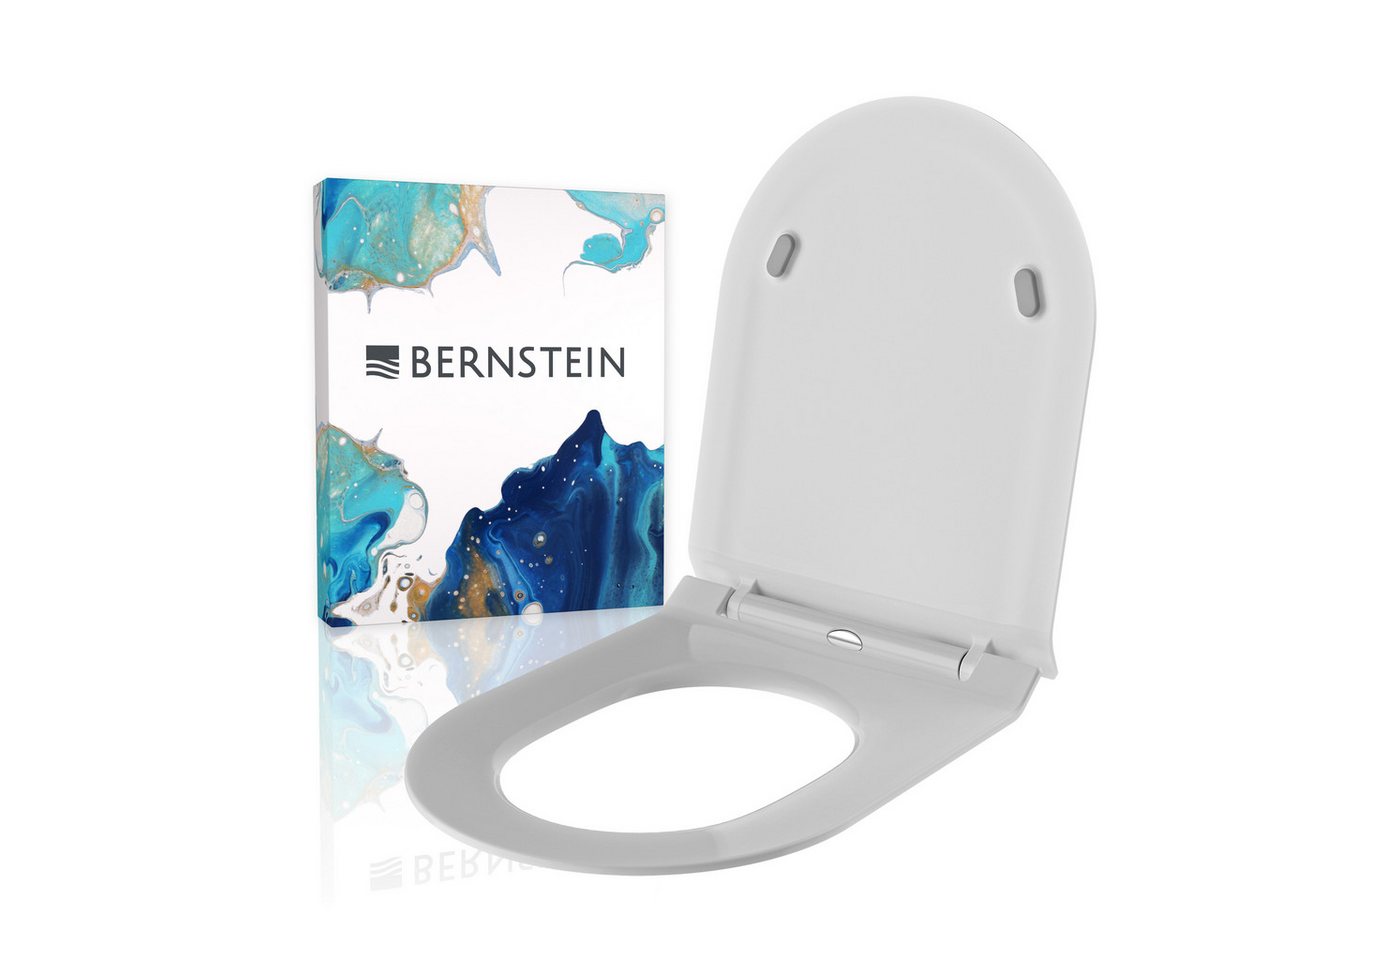 Bernstein WC-Sitz U2019 (Komplett-Set, inkl. Befestigungsmaterial), weiß / D-Form / Absenkautomatik / flach / abnehmbar / aus Duroplast von Bernstein